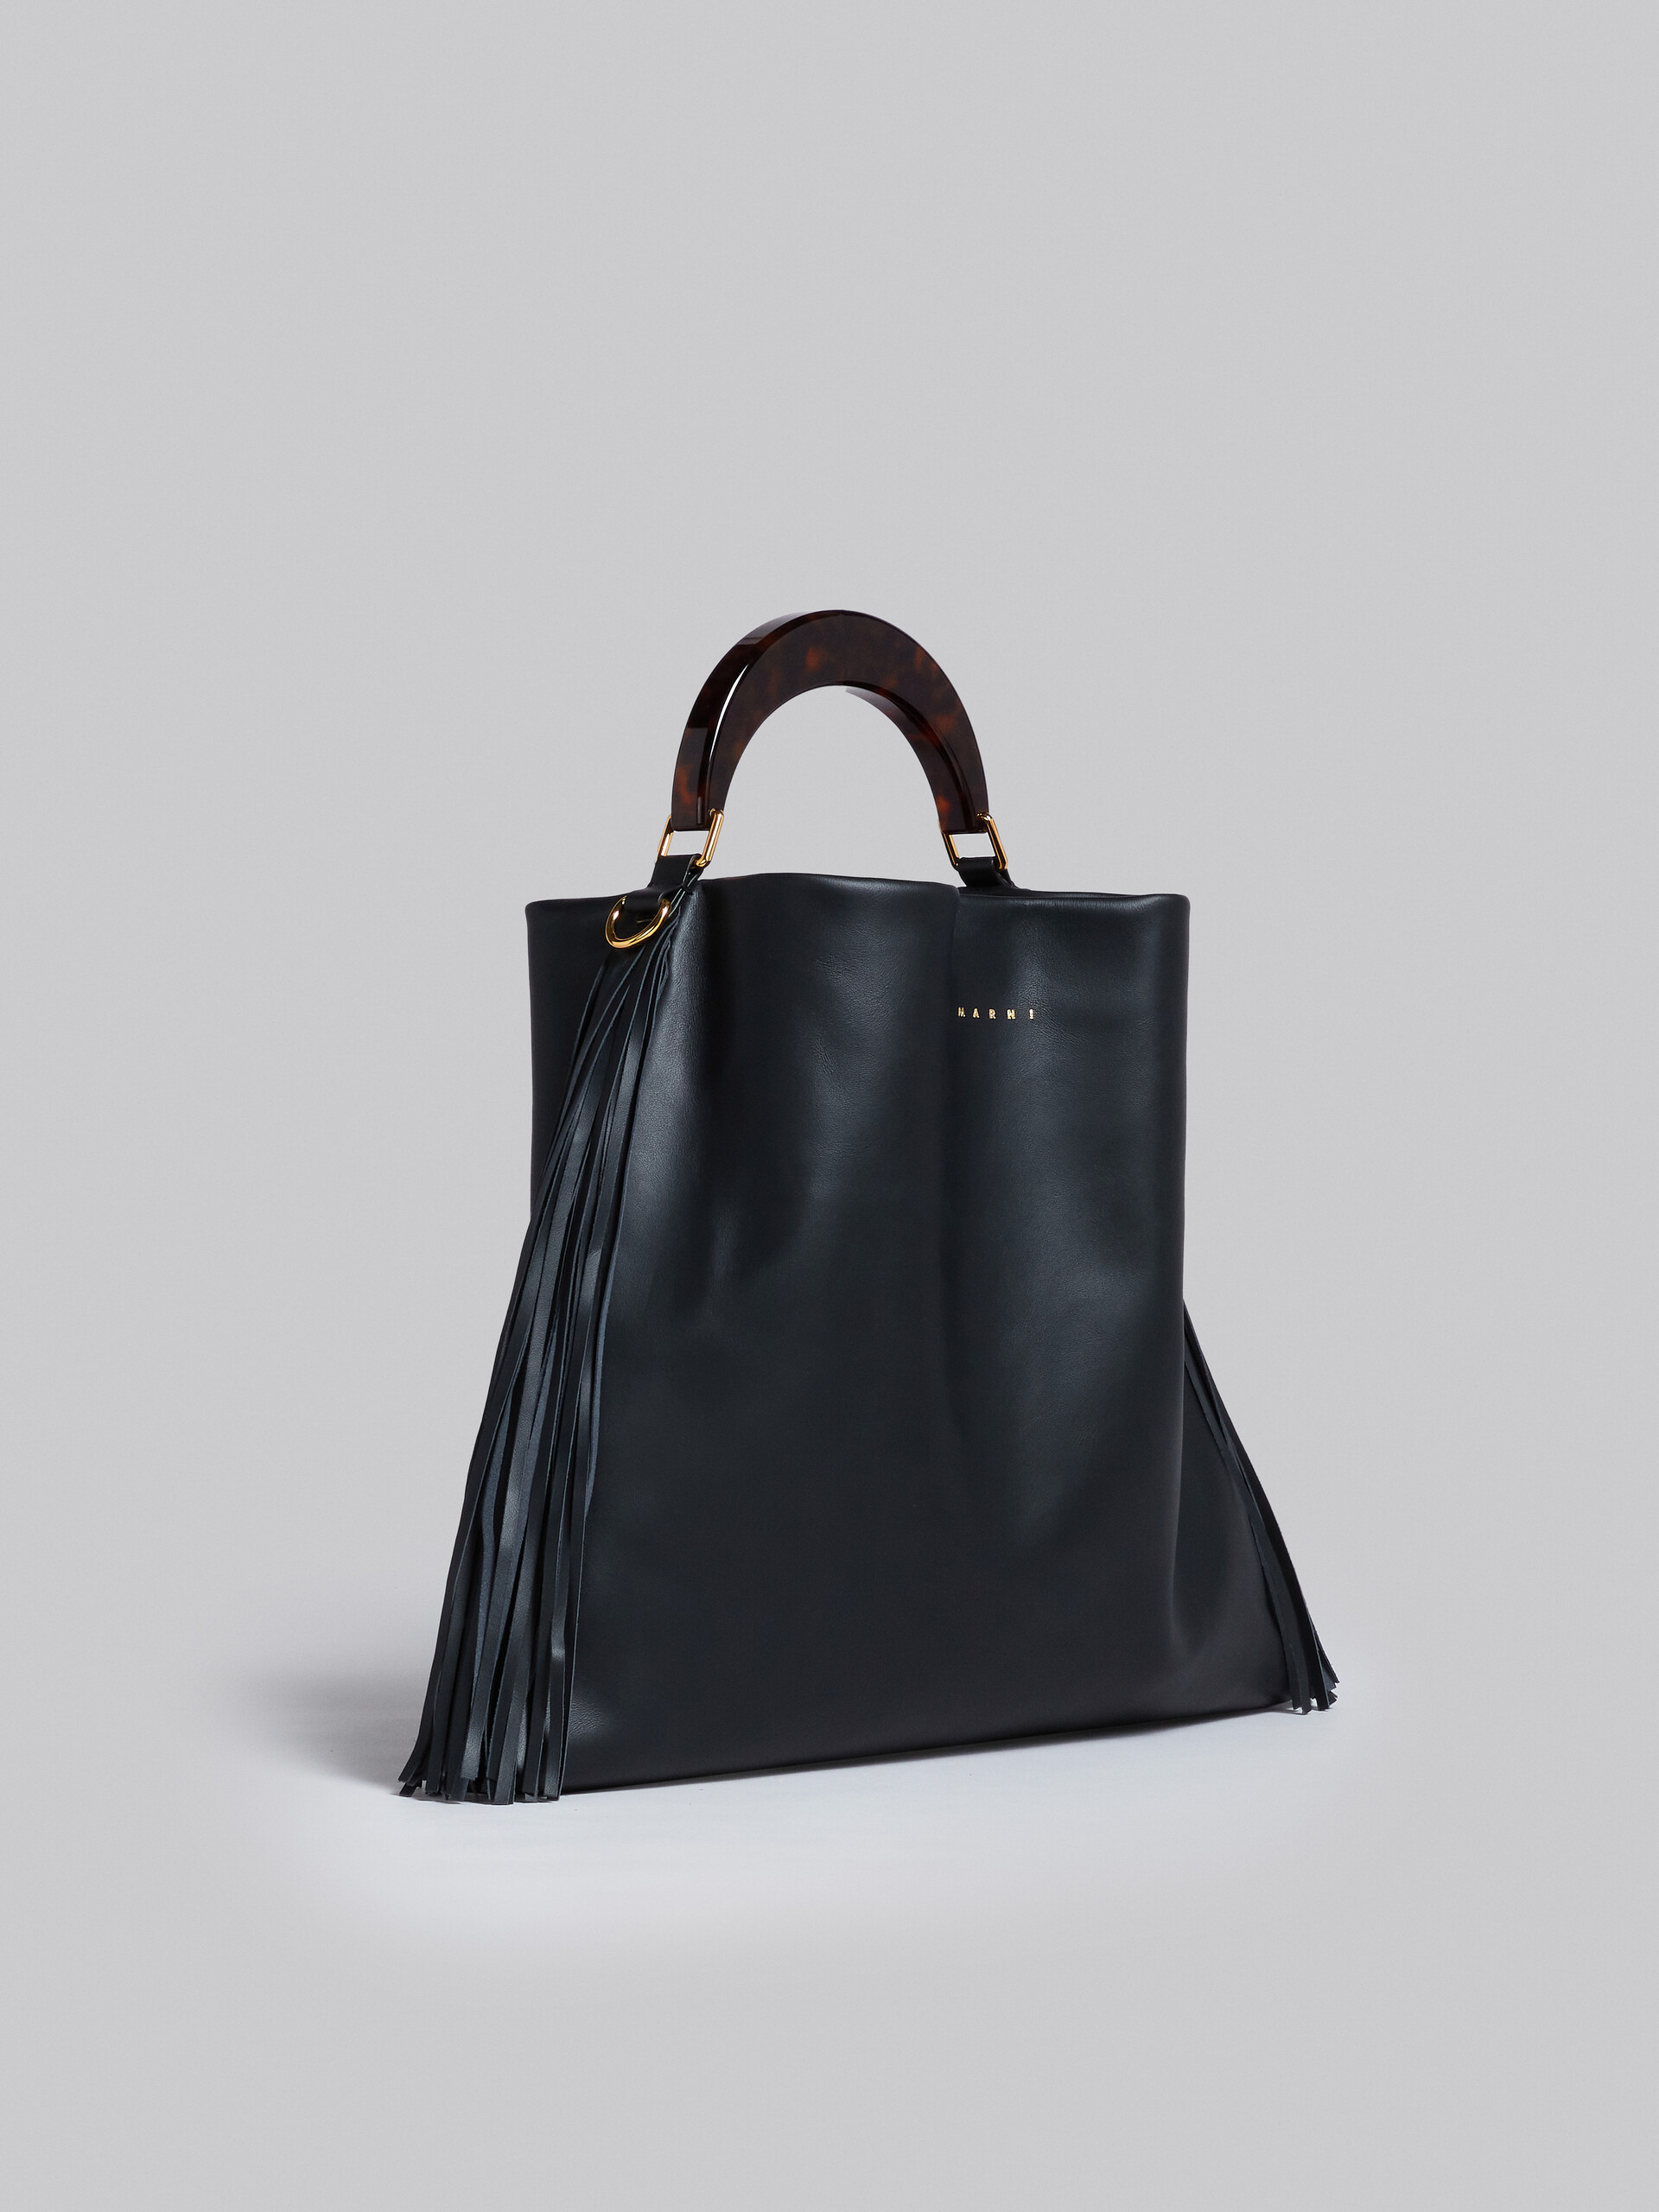 Venice Medium Bag in black leather with fringes - Shoulder Bag - Image 5